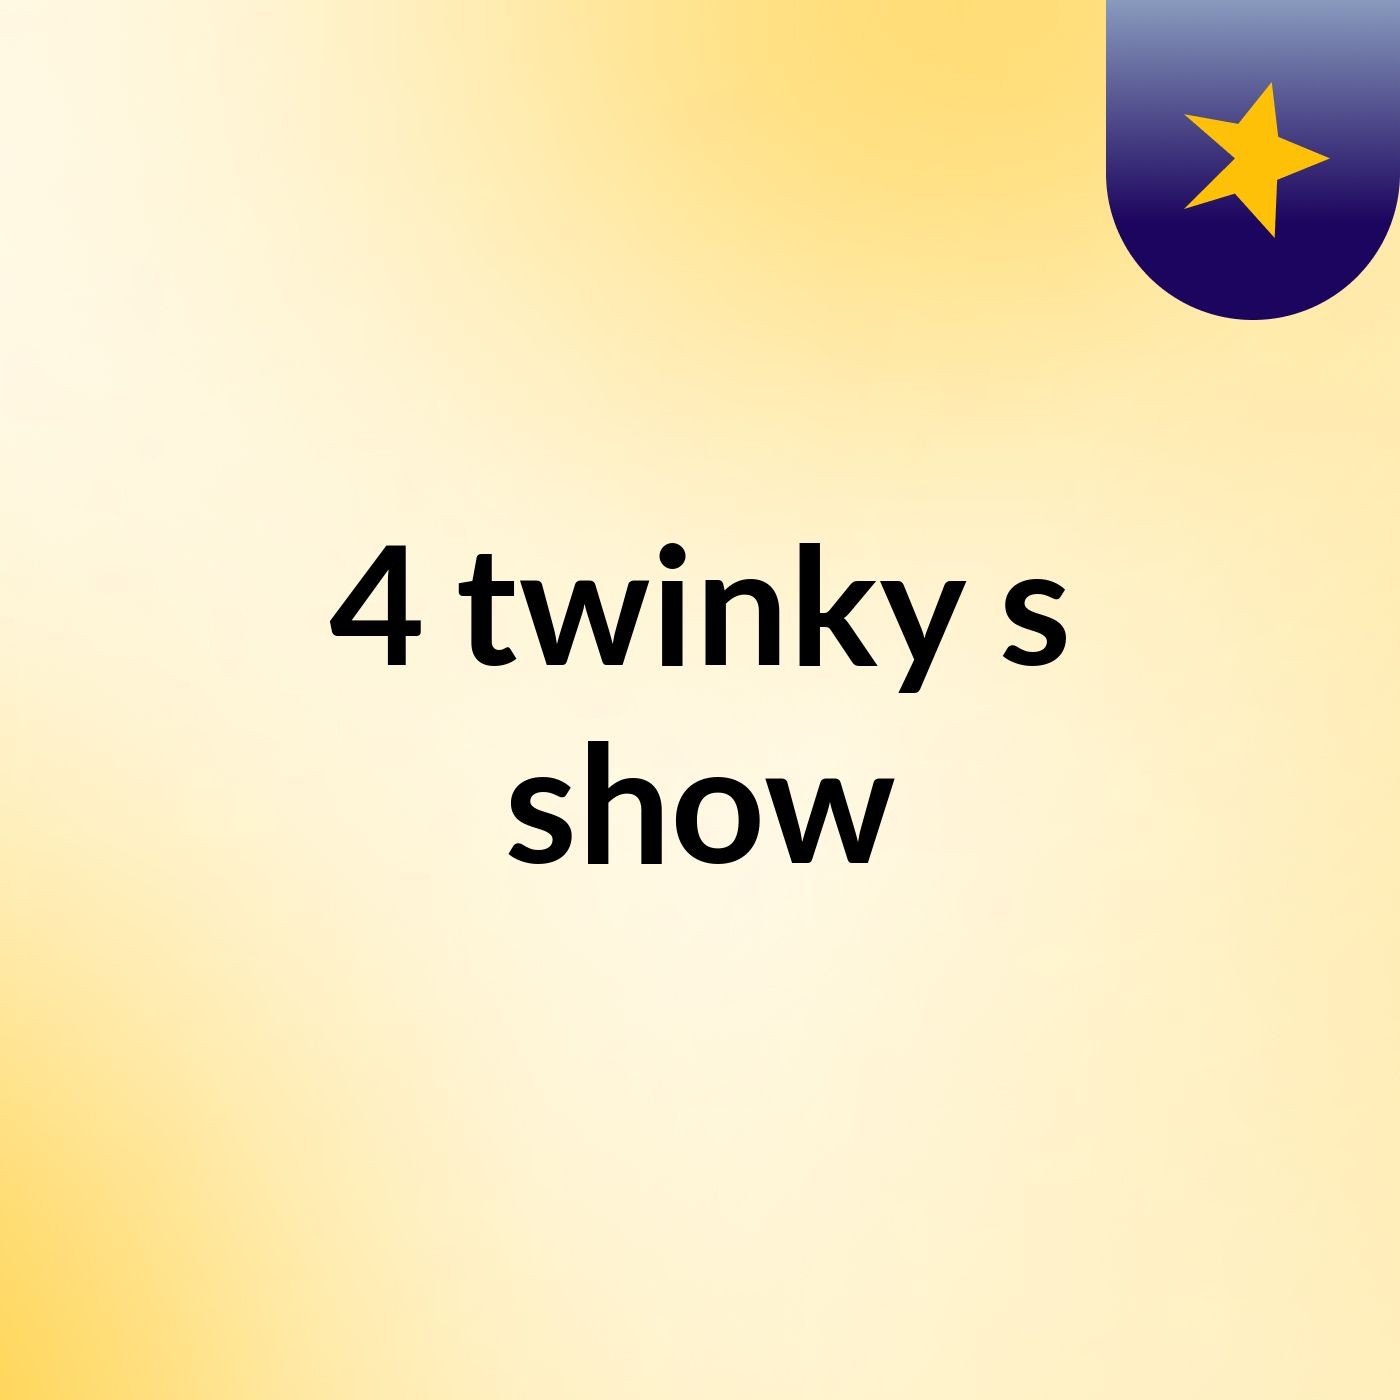 4 twinky's show